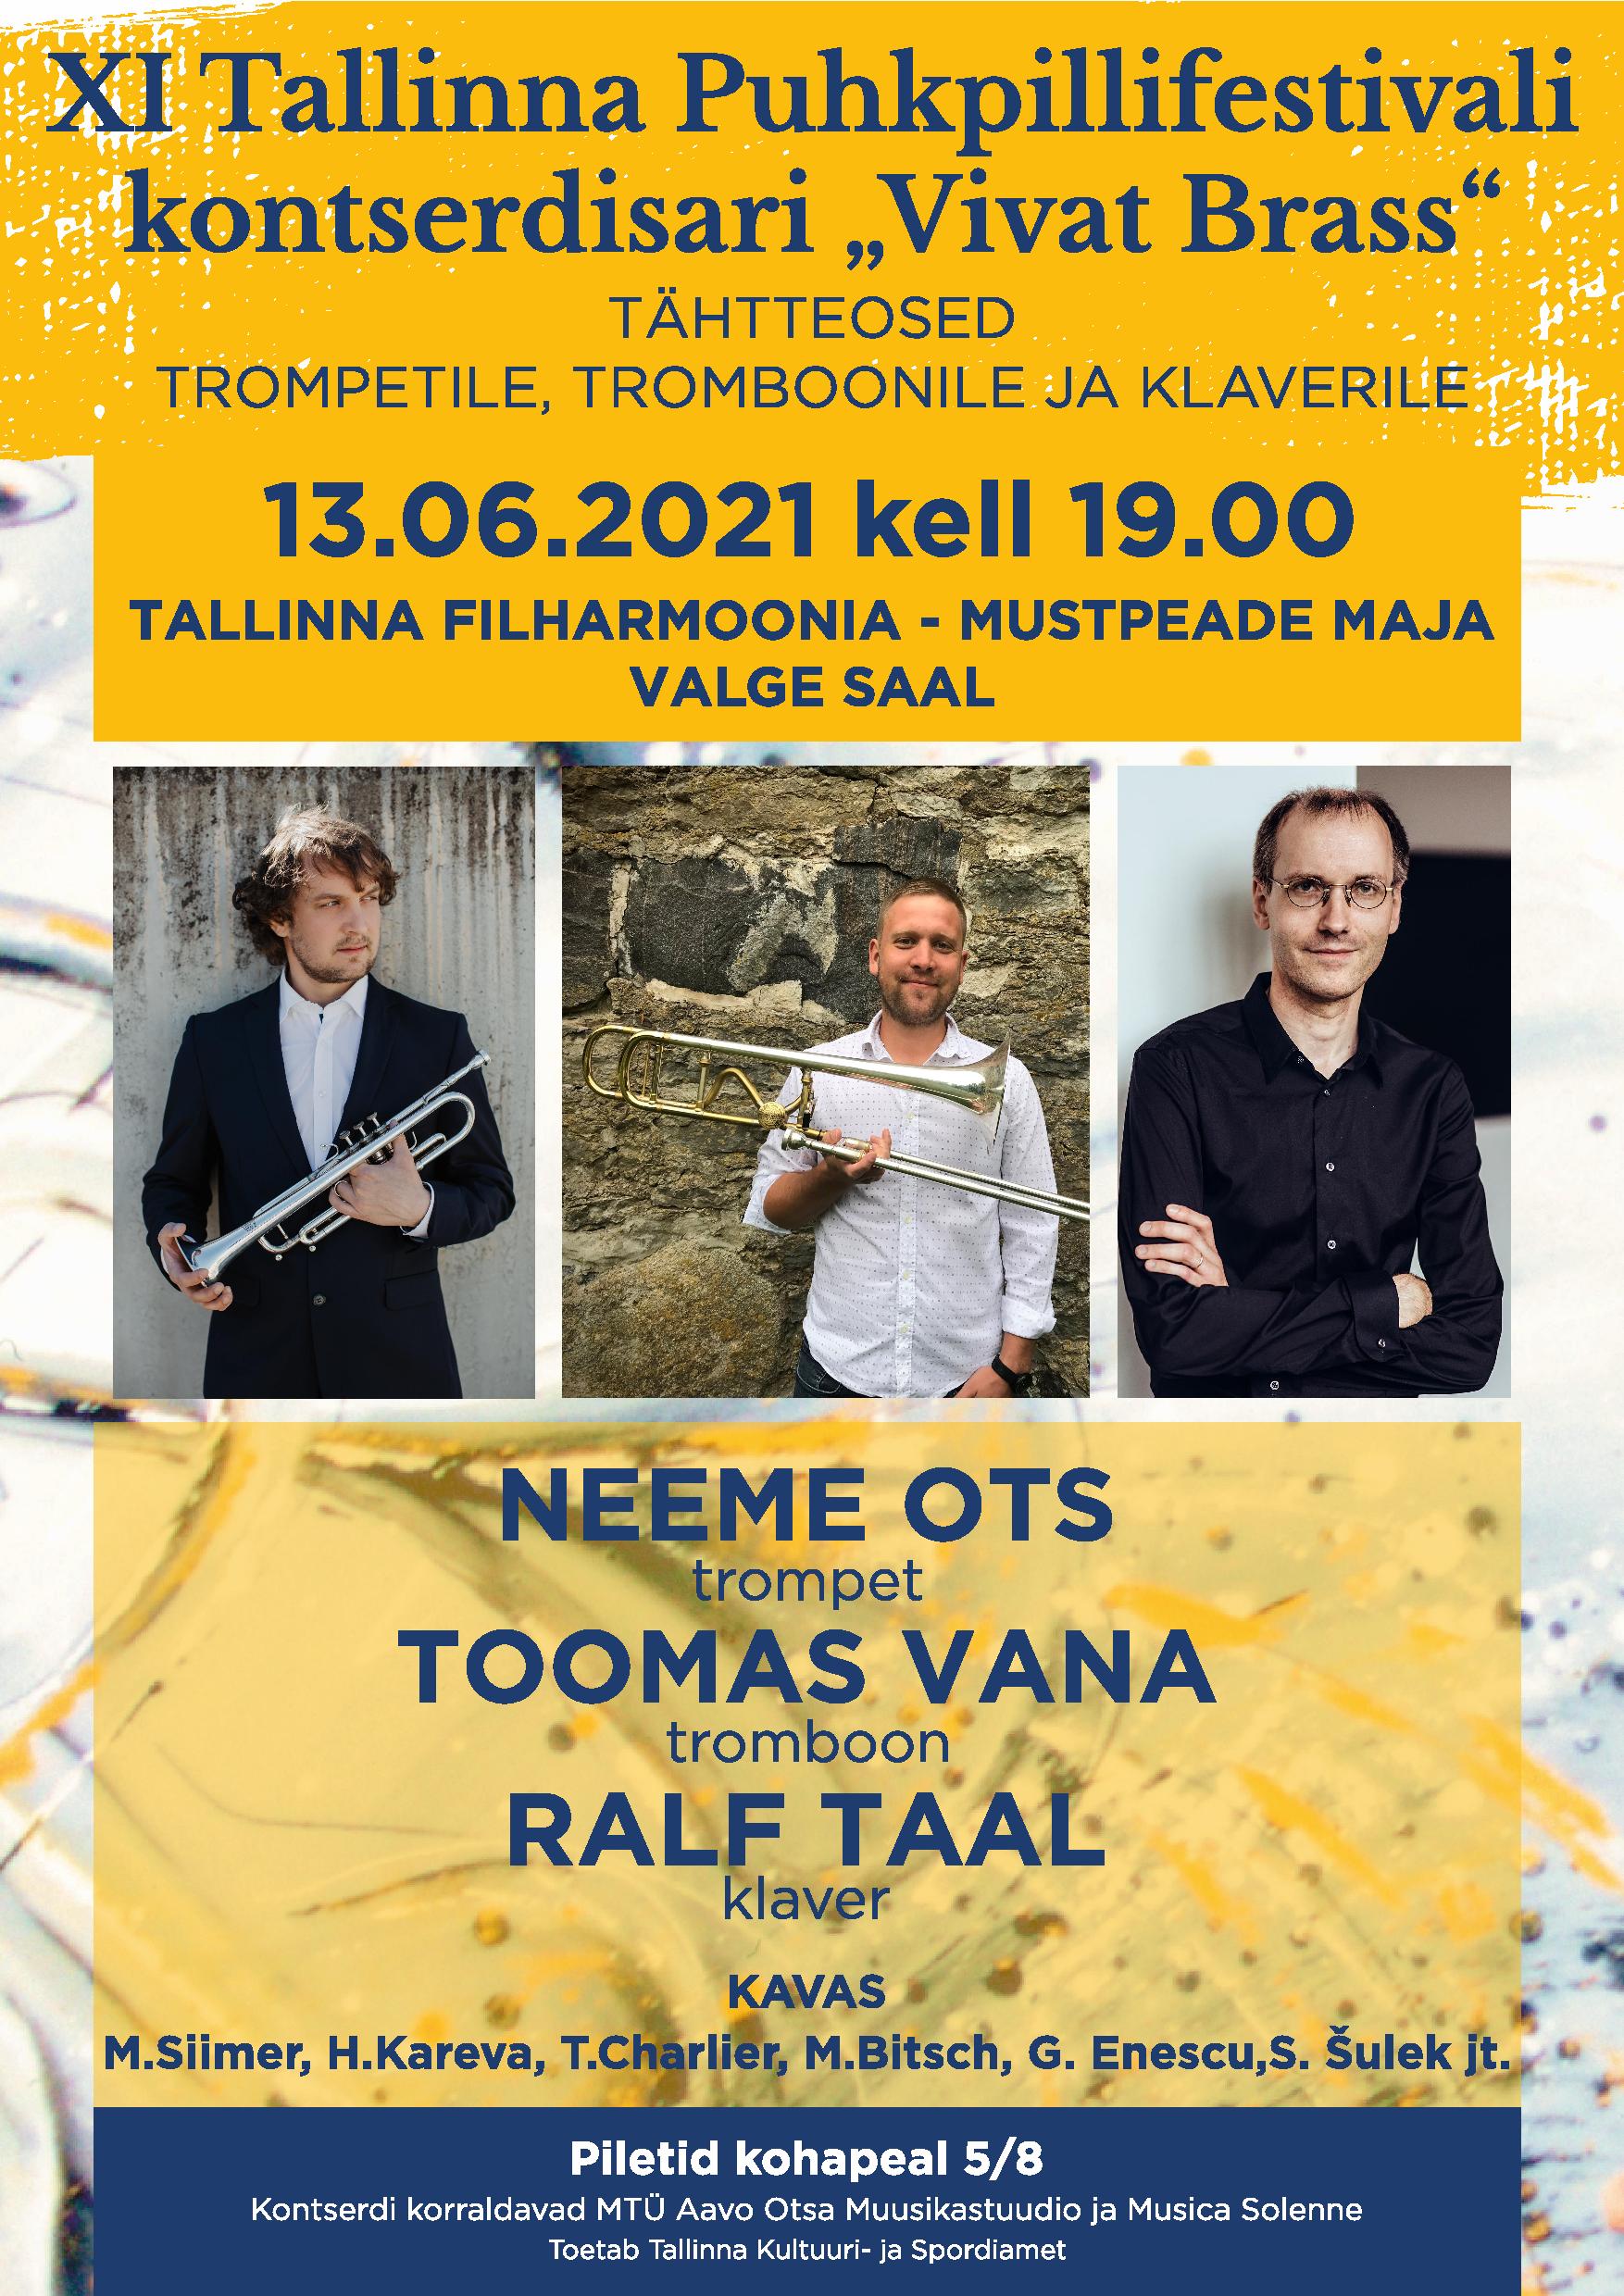 XI Tallinna Puhkpillifestivali kontserdisari ''Vivat Brass''